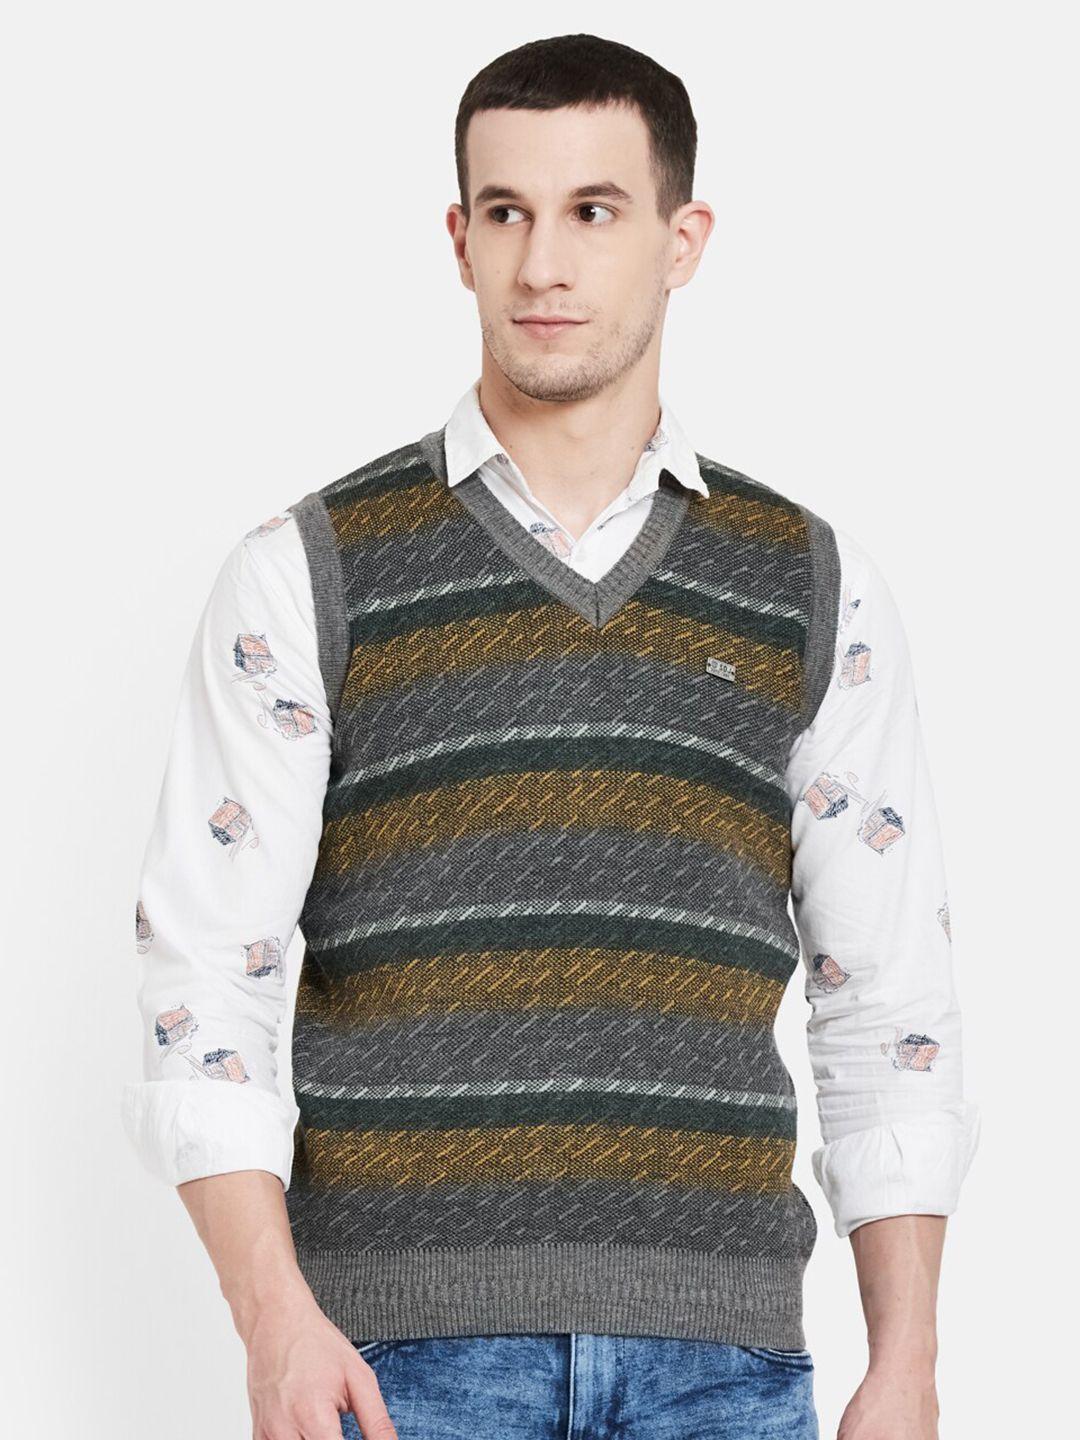 duke men grey & mustard striped sweater vest